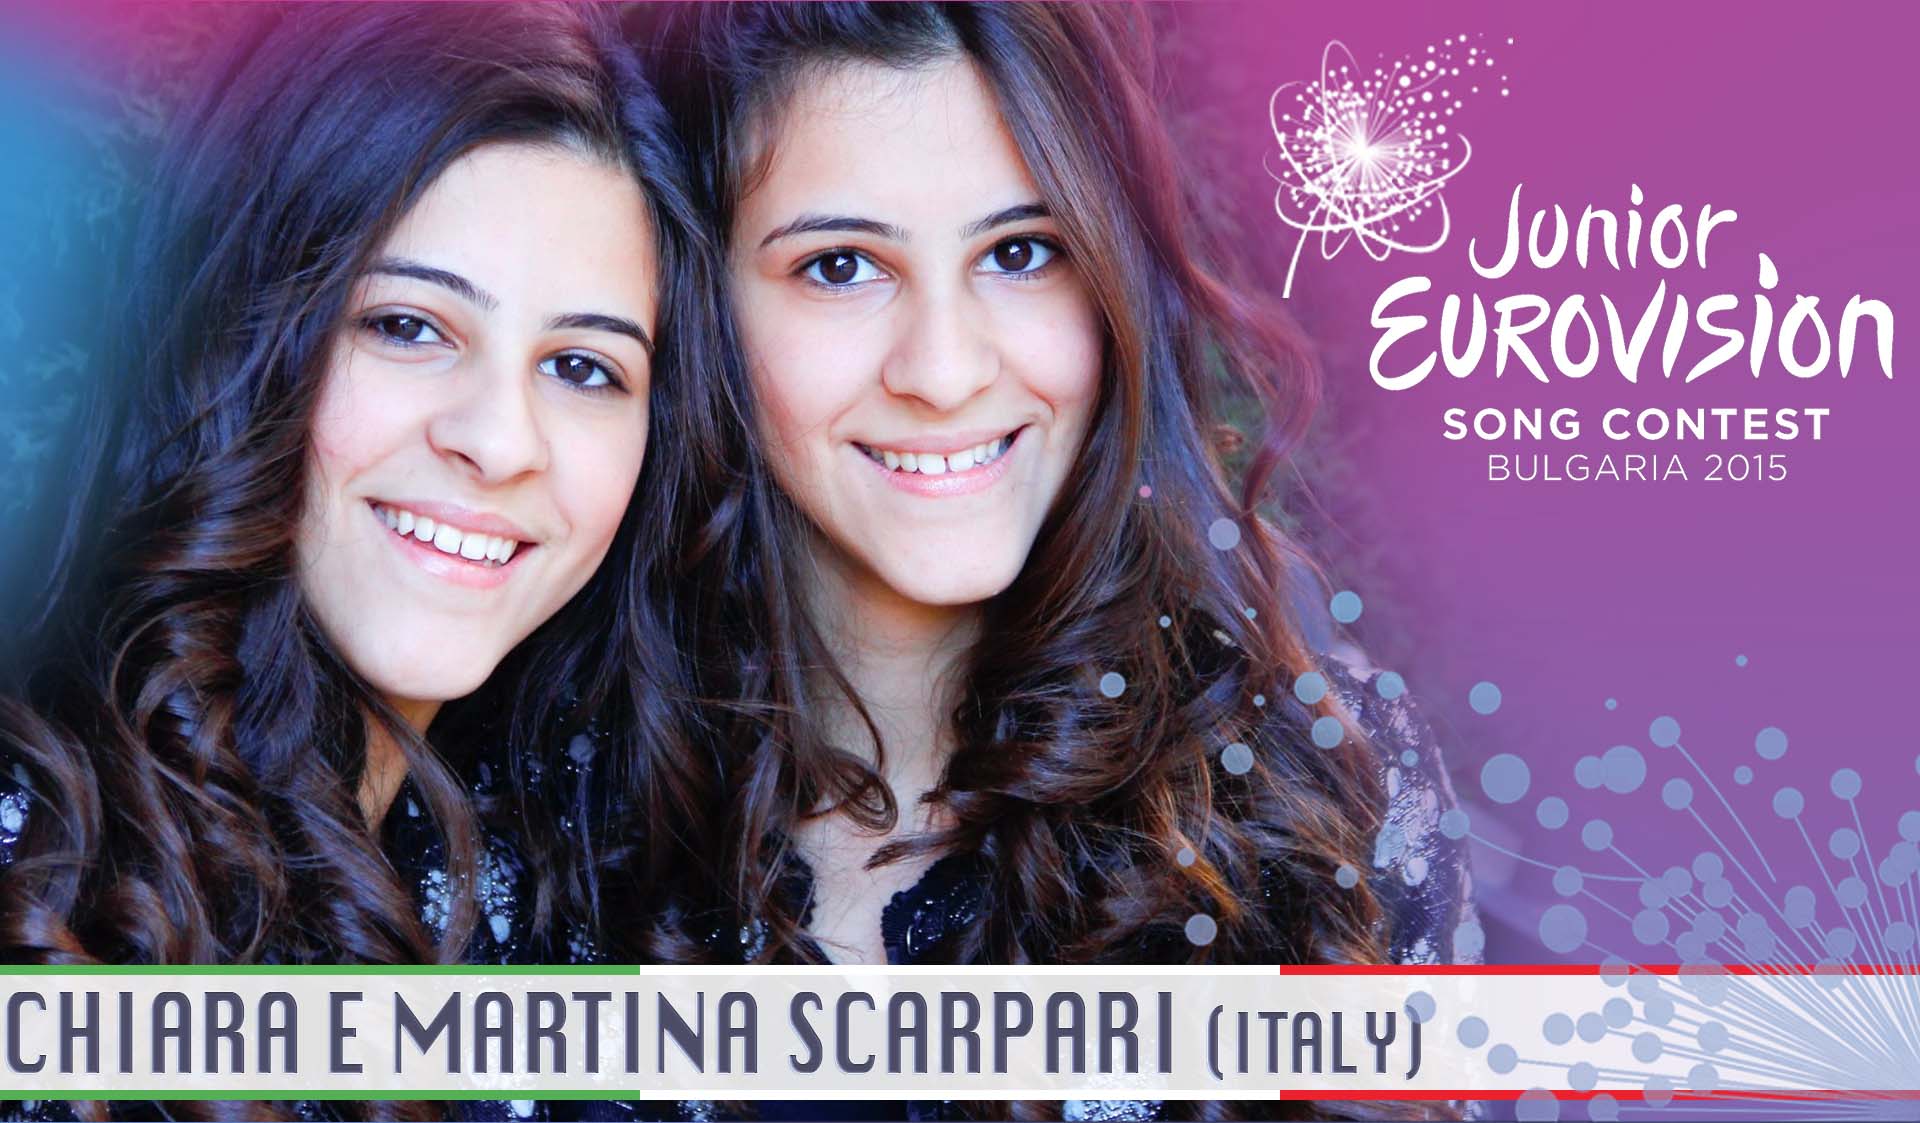 Chiara e Martina Scarpari